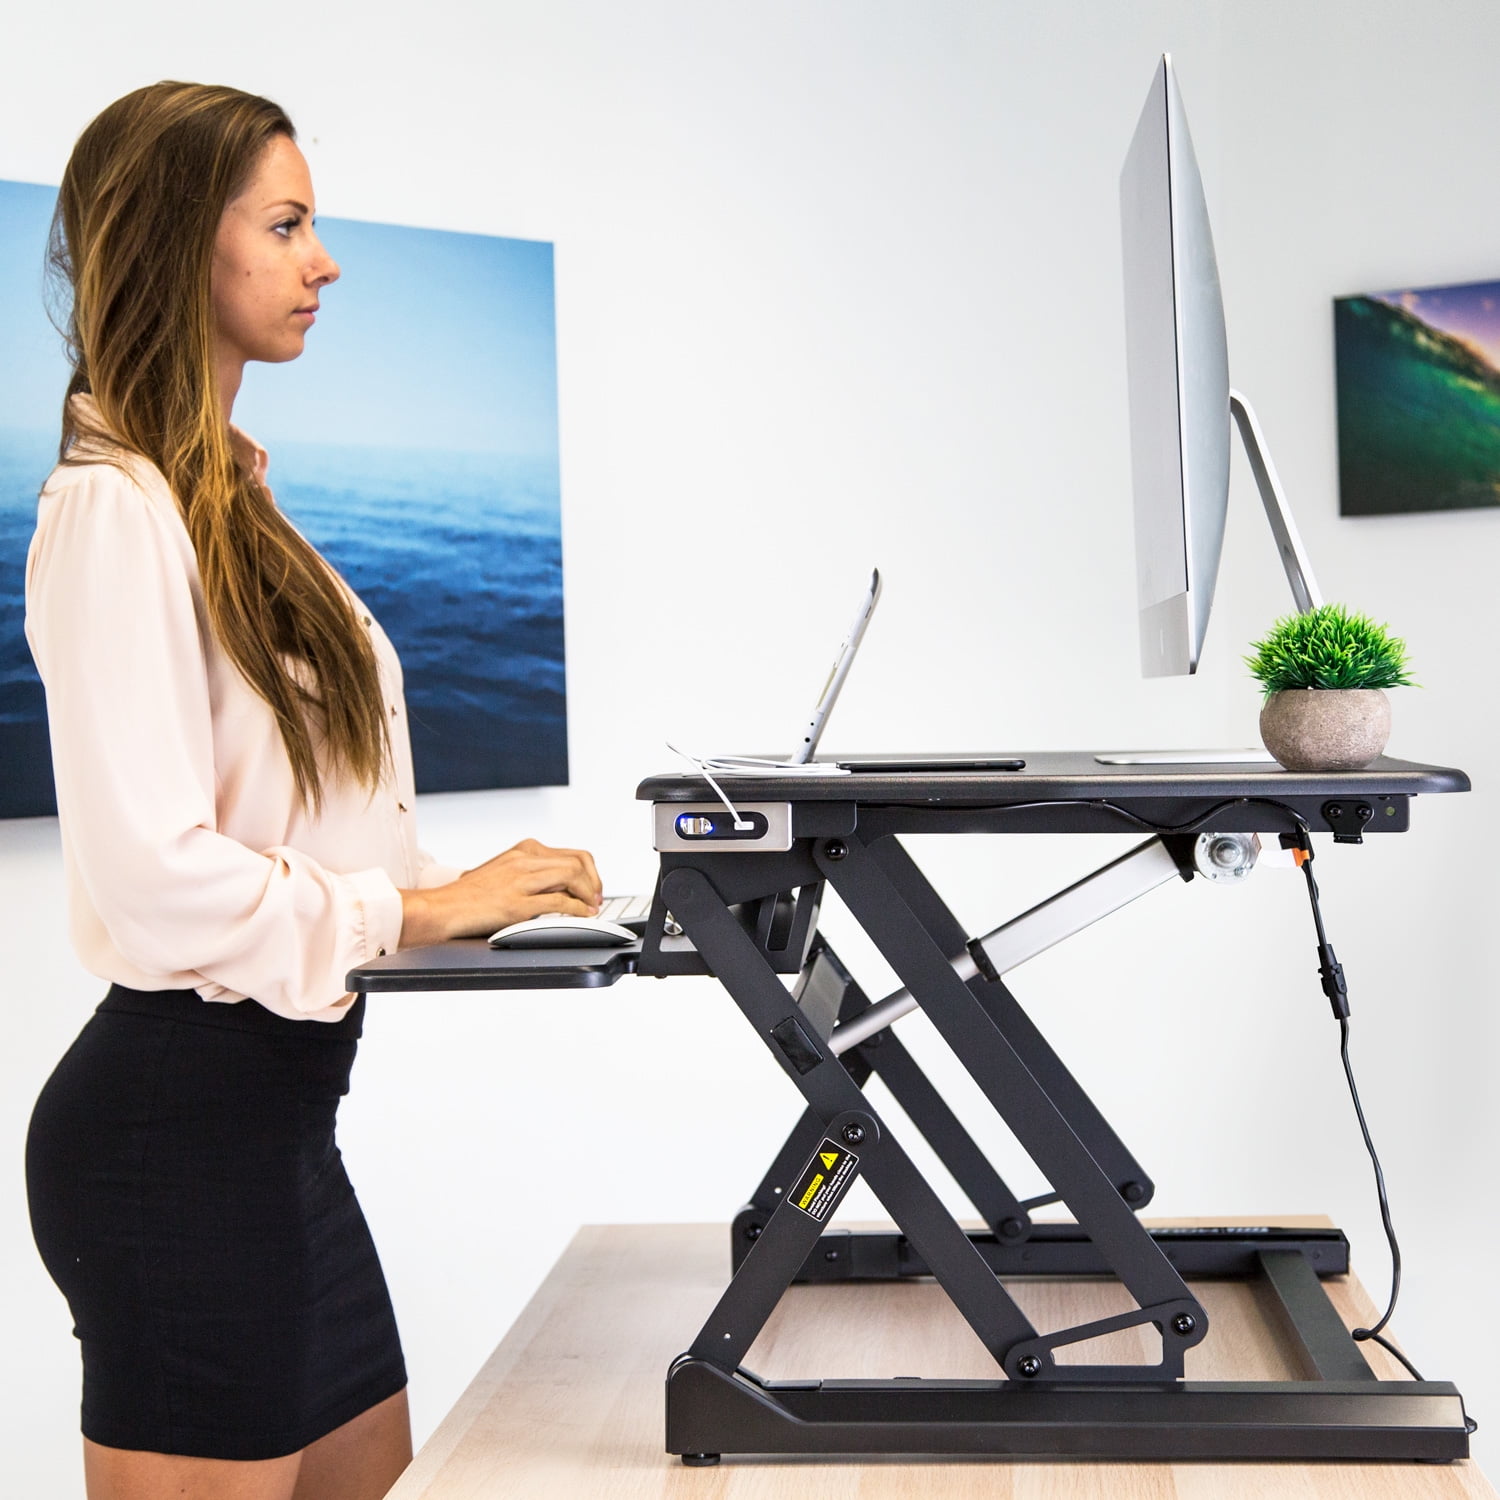 Motorized Sit Stand Desk with Built in USB Port Black Electric Standing Desk Converter MI-7965 Ergonomic Adjustable Workstation Mount-It 